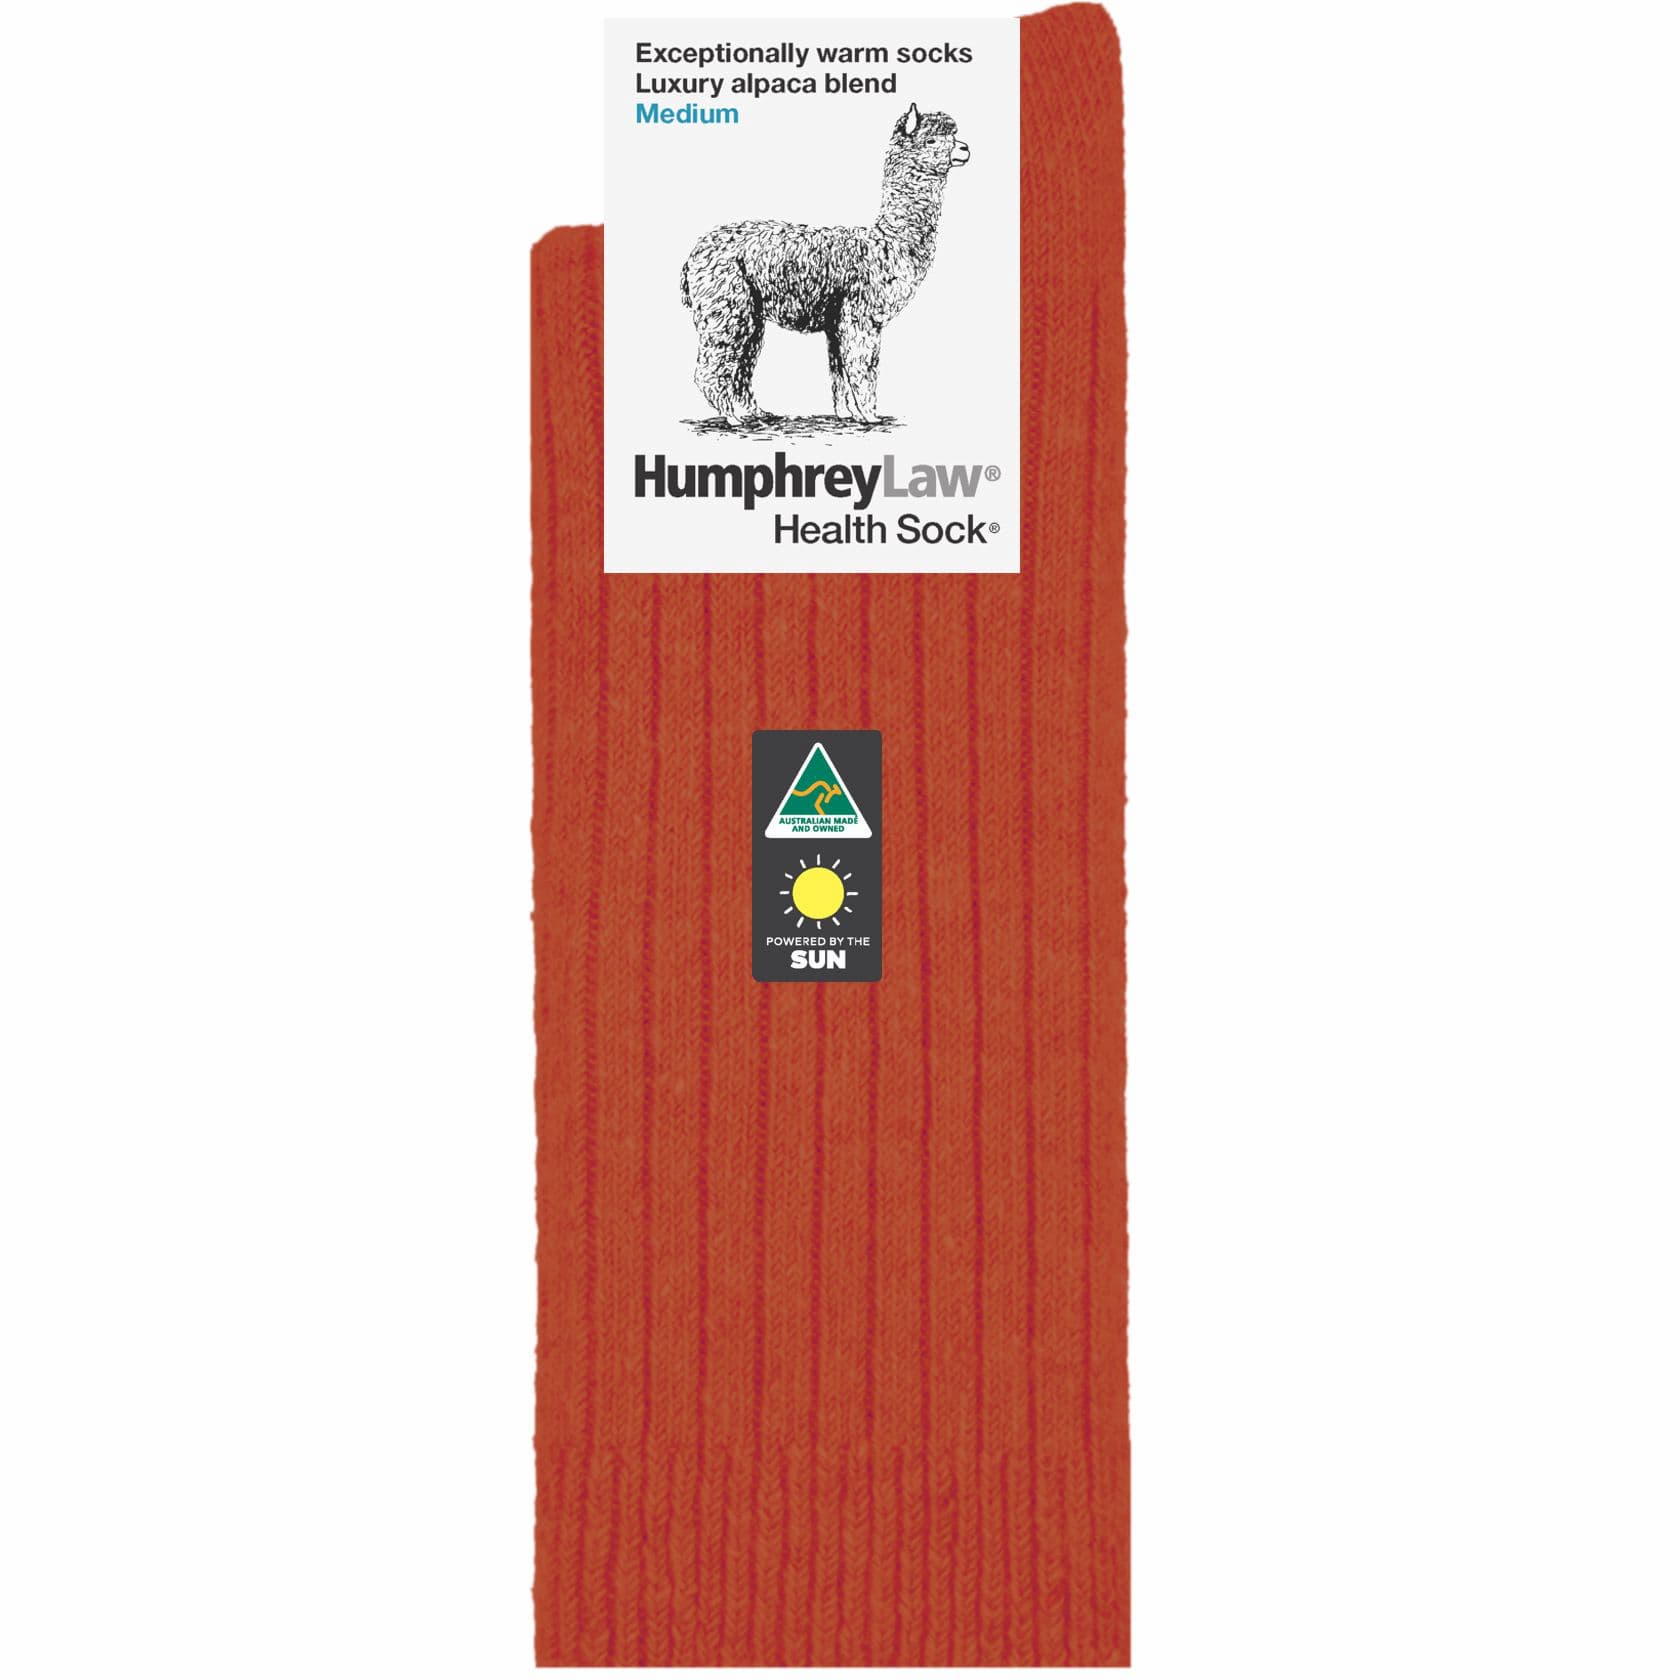 Luxury Alpaca Blend Sock in Terracotta-The Sockery